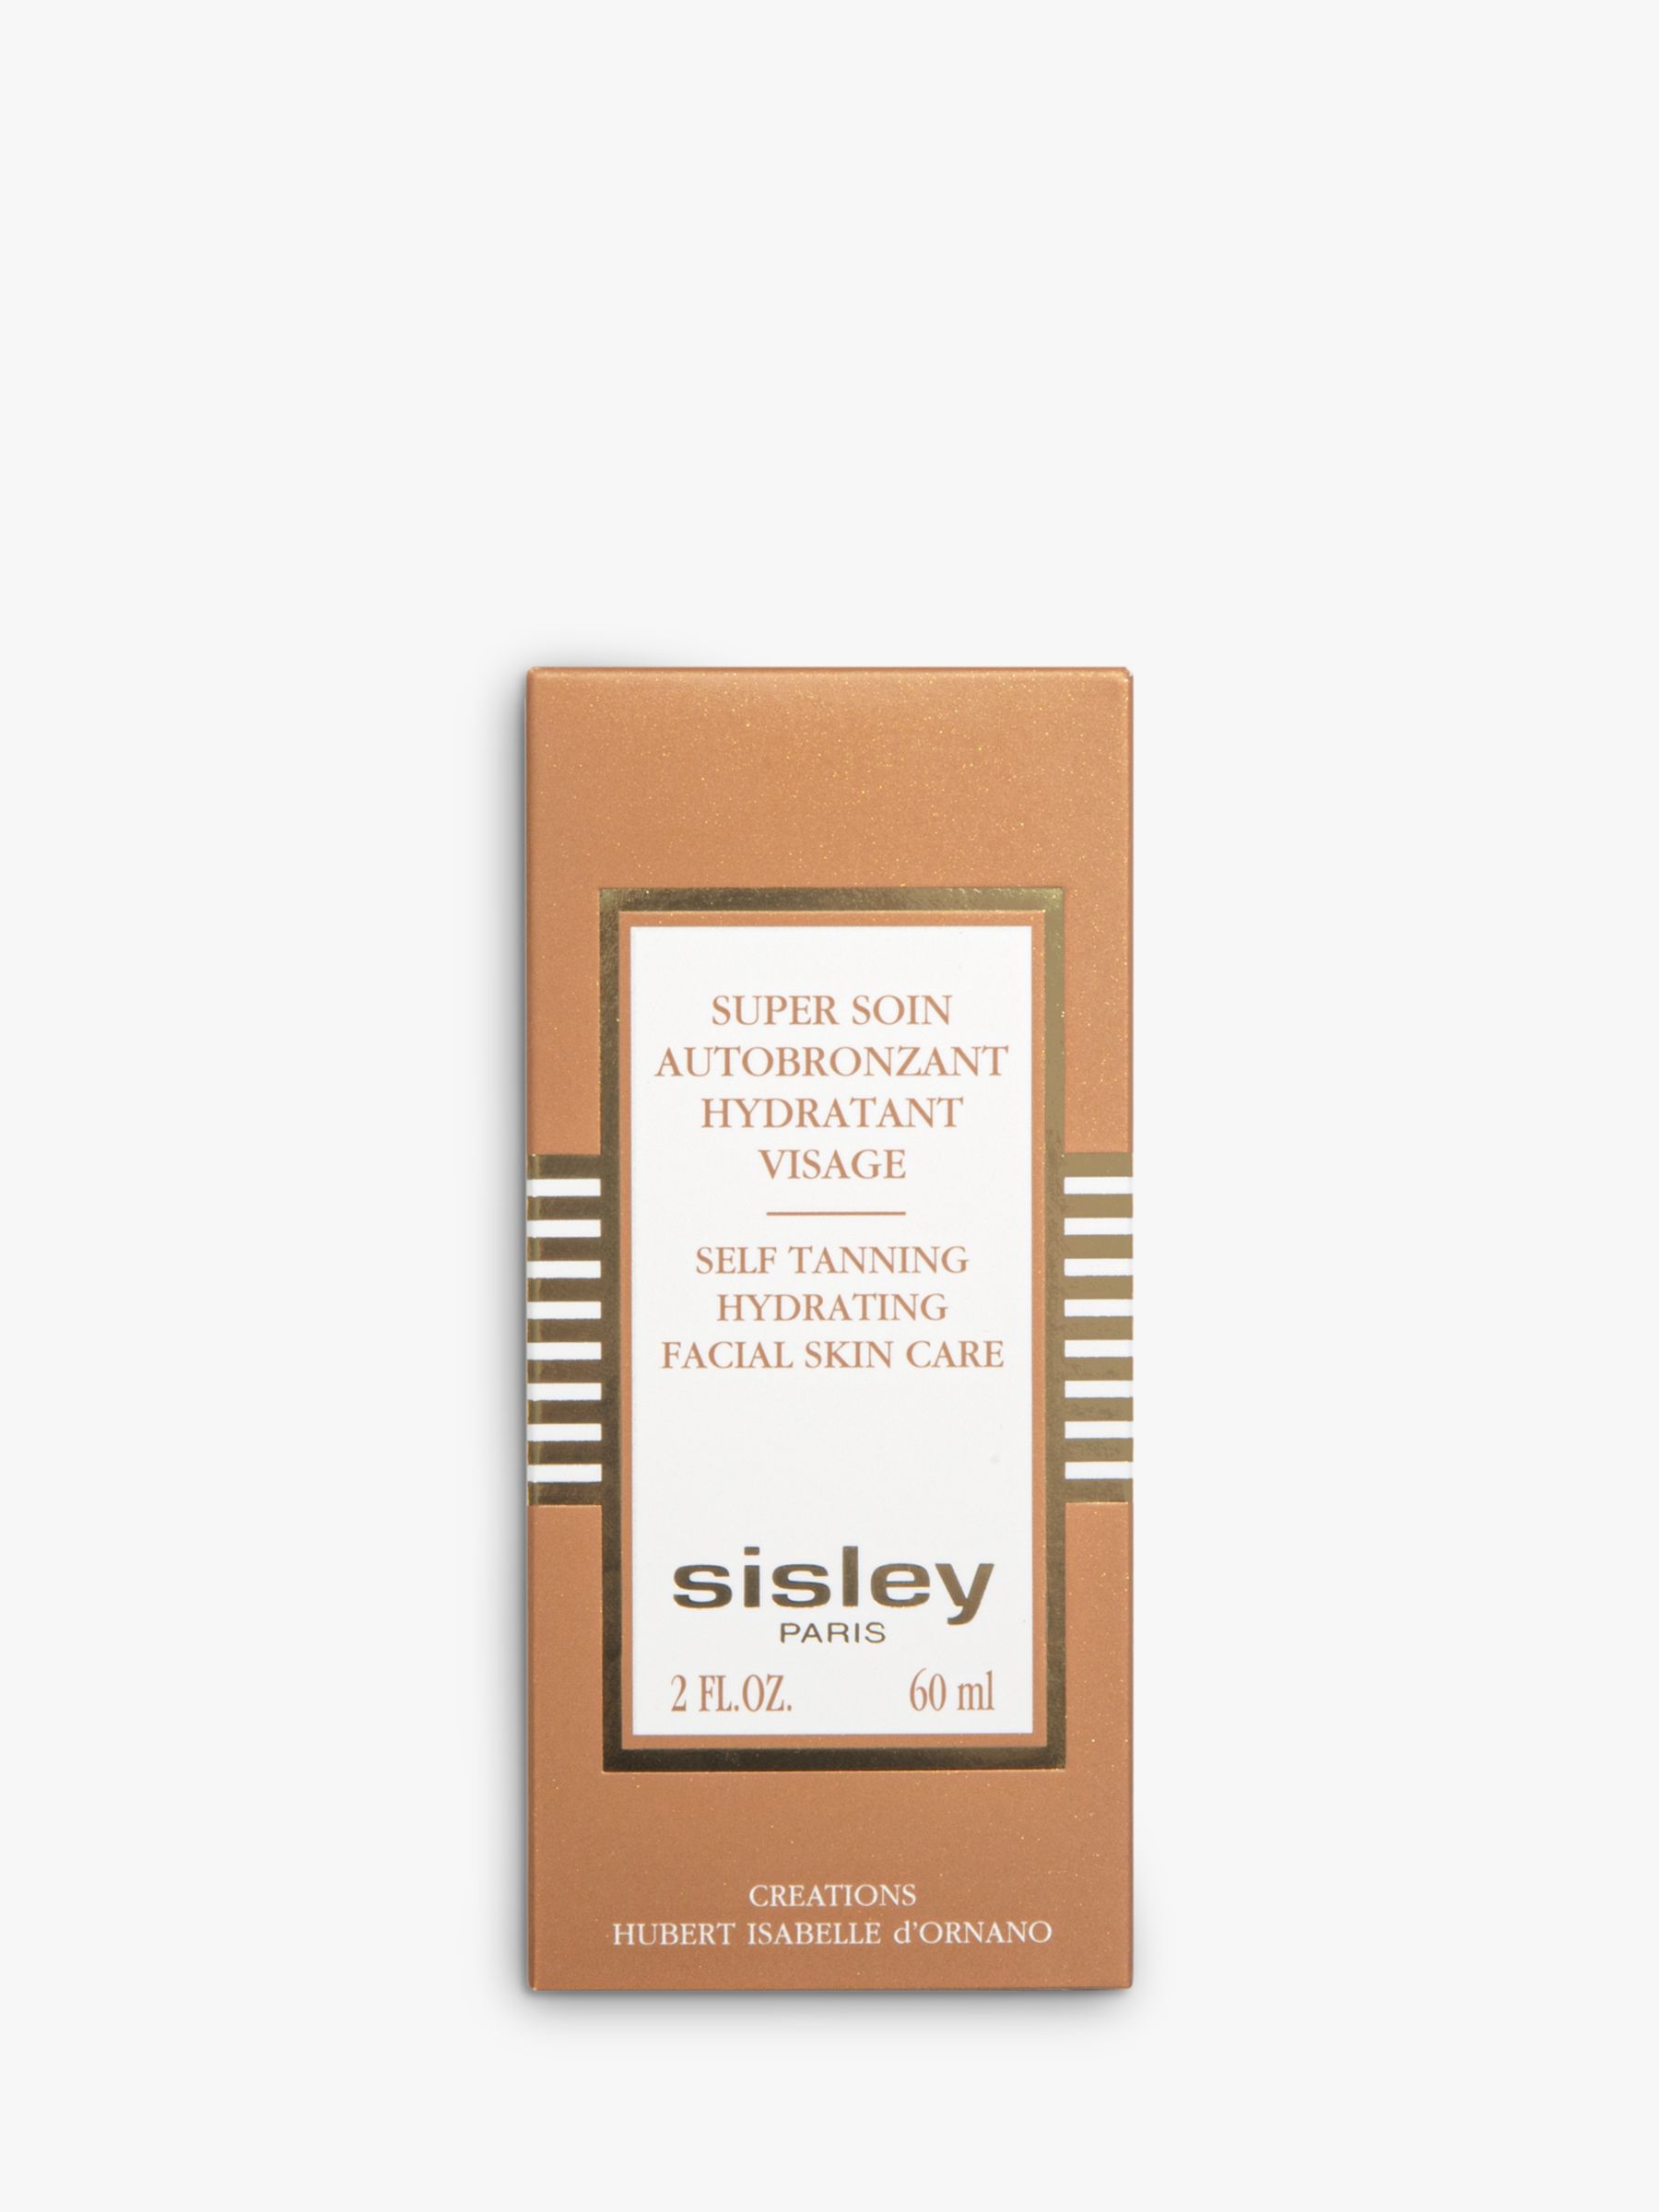 Sisley-Paris Self Tanning Hydrating Facial Skin Care, 60ml 2